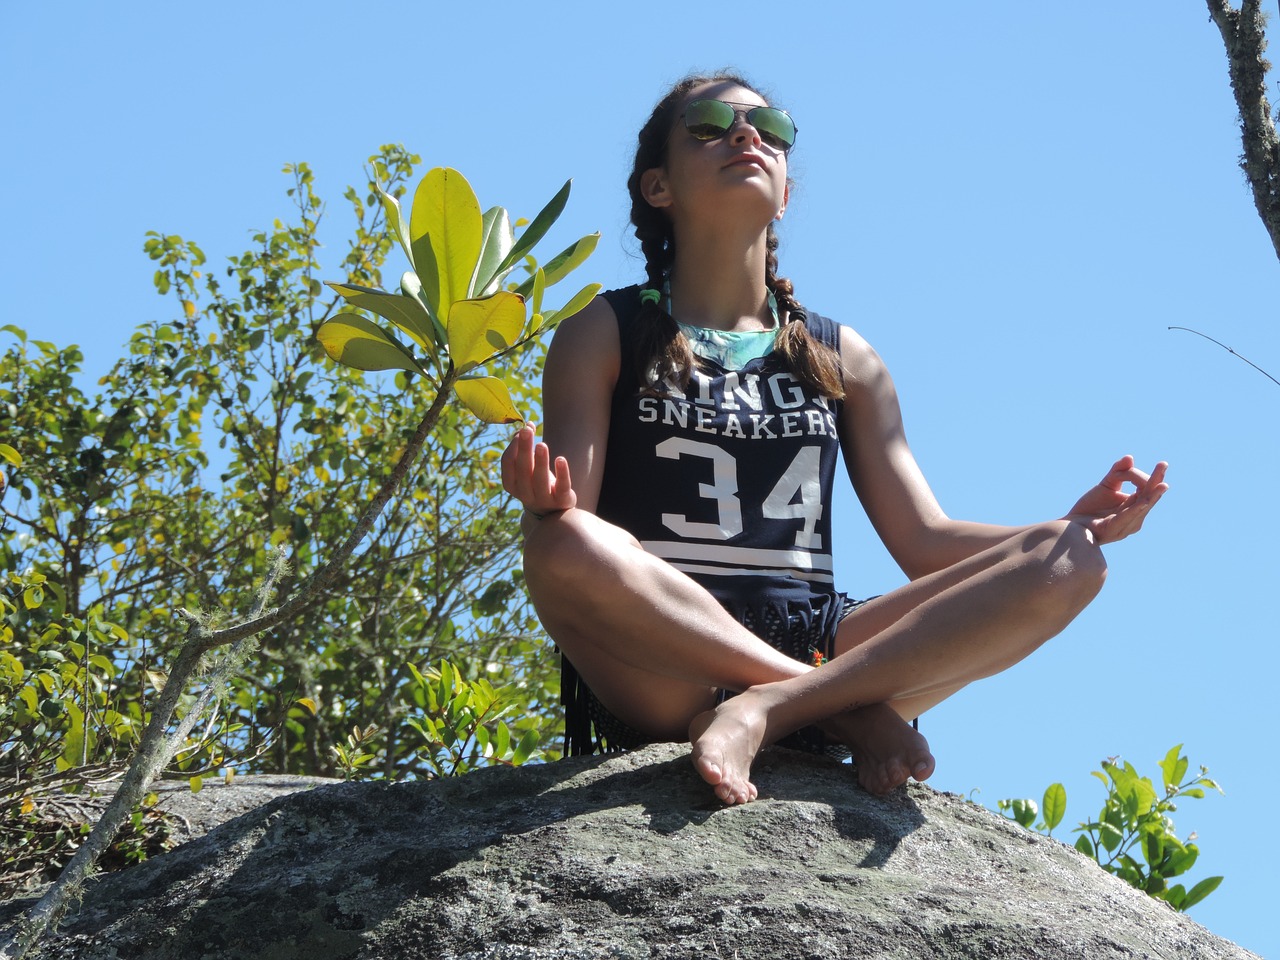 Image - peace yoga meditation child